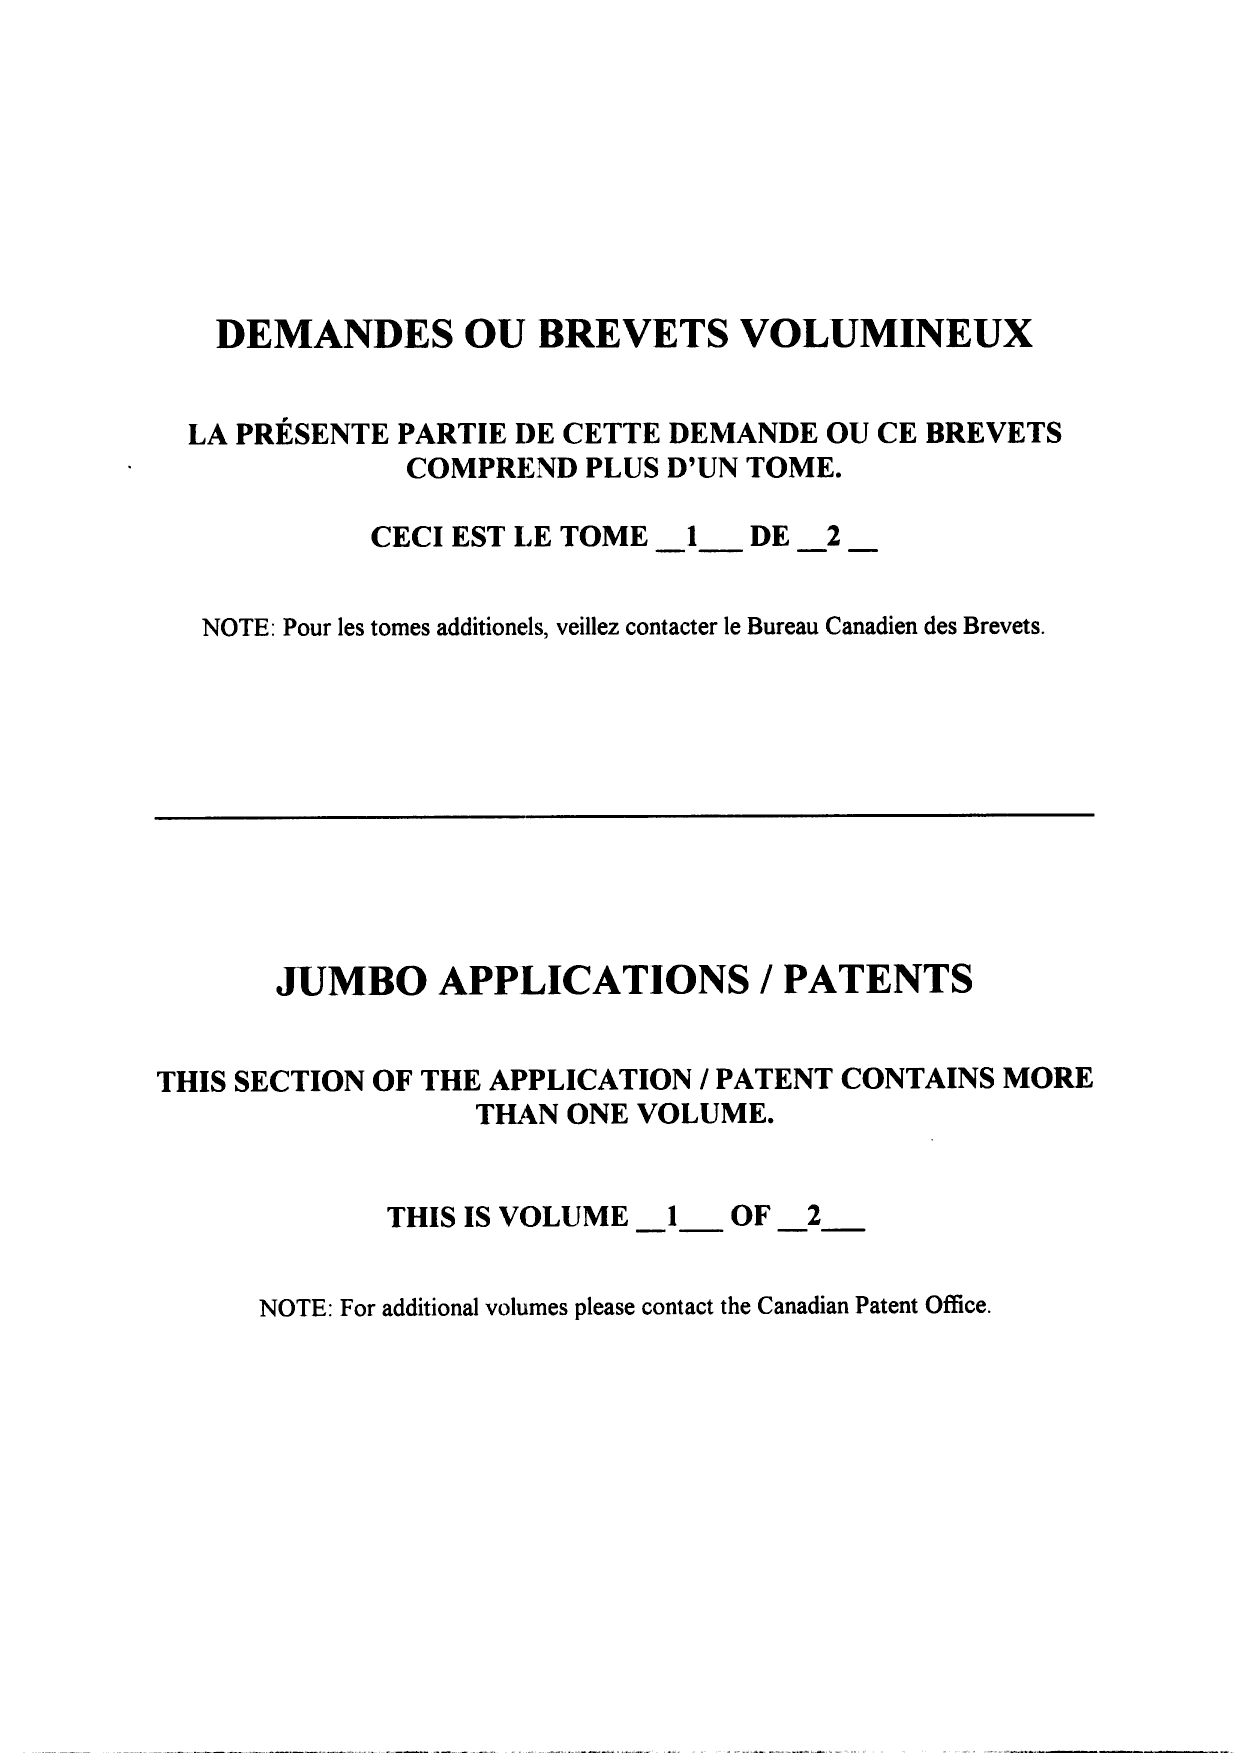 Canadian Patent Document 2587084. Description 20070425. Image 1 of 96